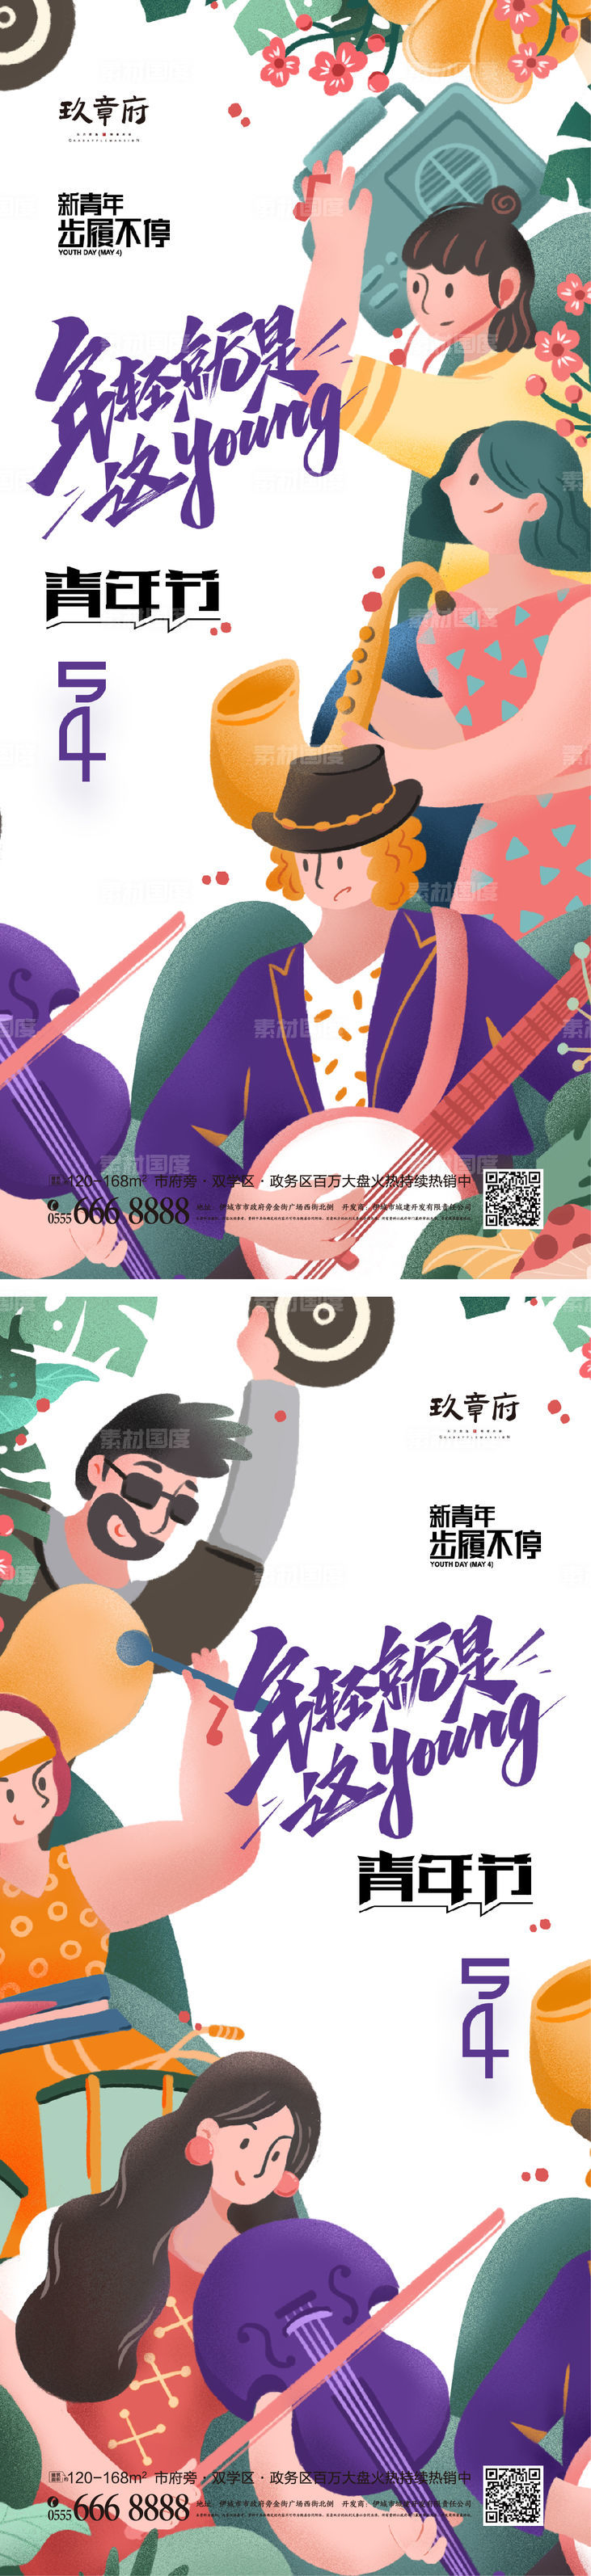 五四 青年节 54 年轻人 乐队 插画 手绘